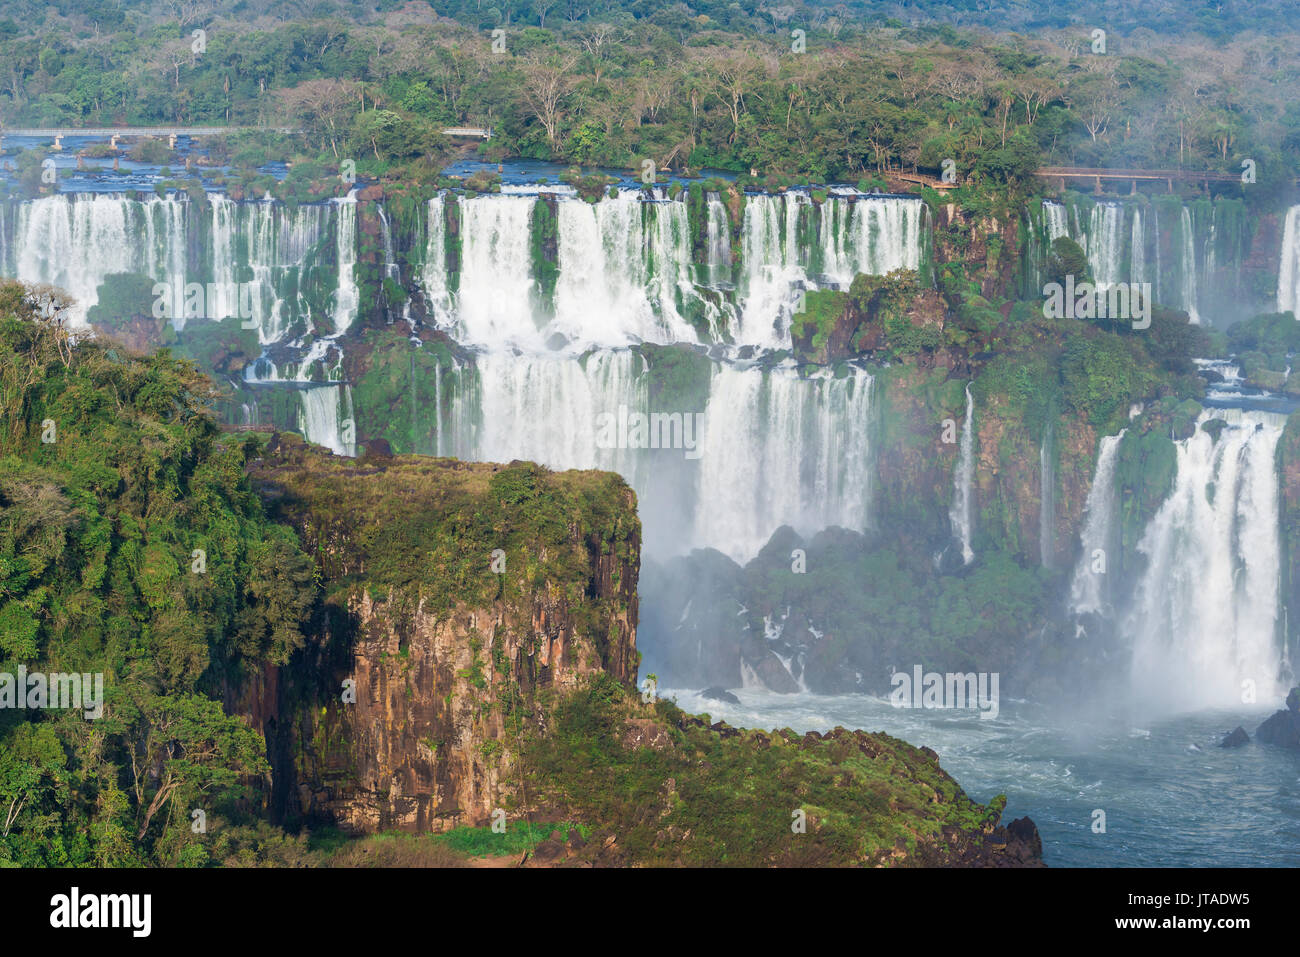 Vista de las Cataratas desde el lado brasileño, Sitio del Patrimonio Mundial de la UNESCO, la ciudad de Foz do Iguaçu, estado de Paraná, Brasil, América del Sur Foto de stock